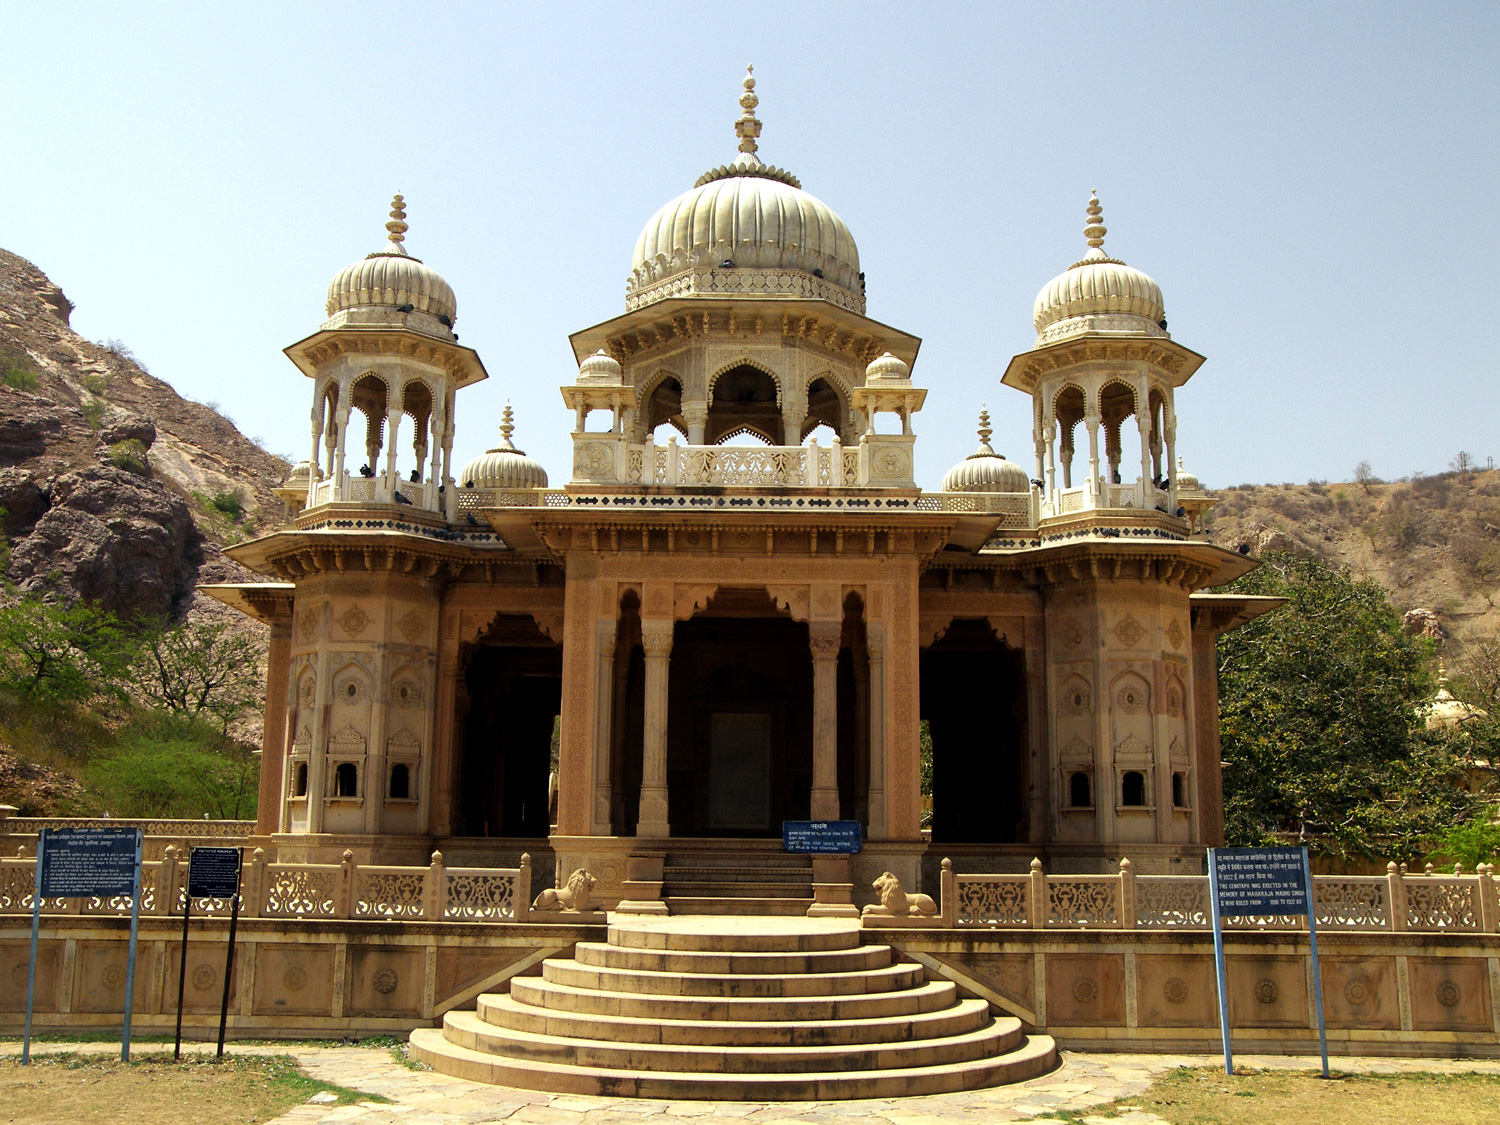 Maharani ki Chhatri: The Royal Cenotaph